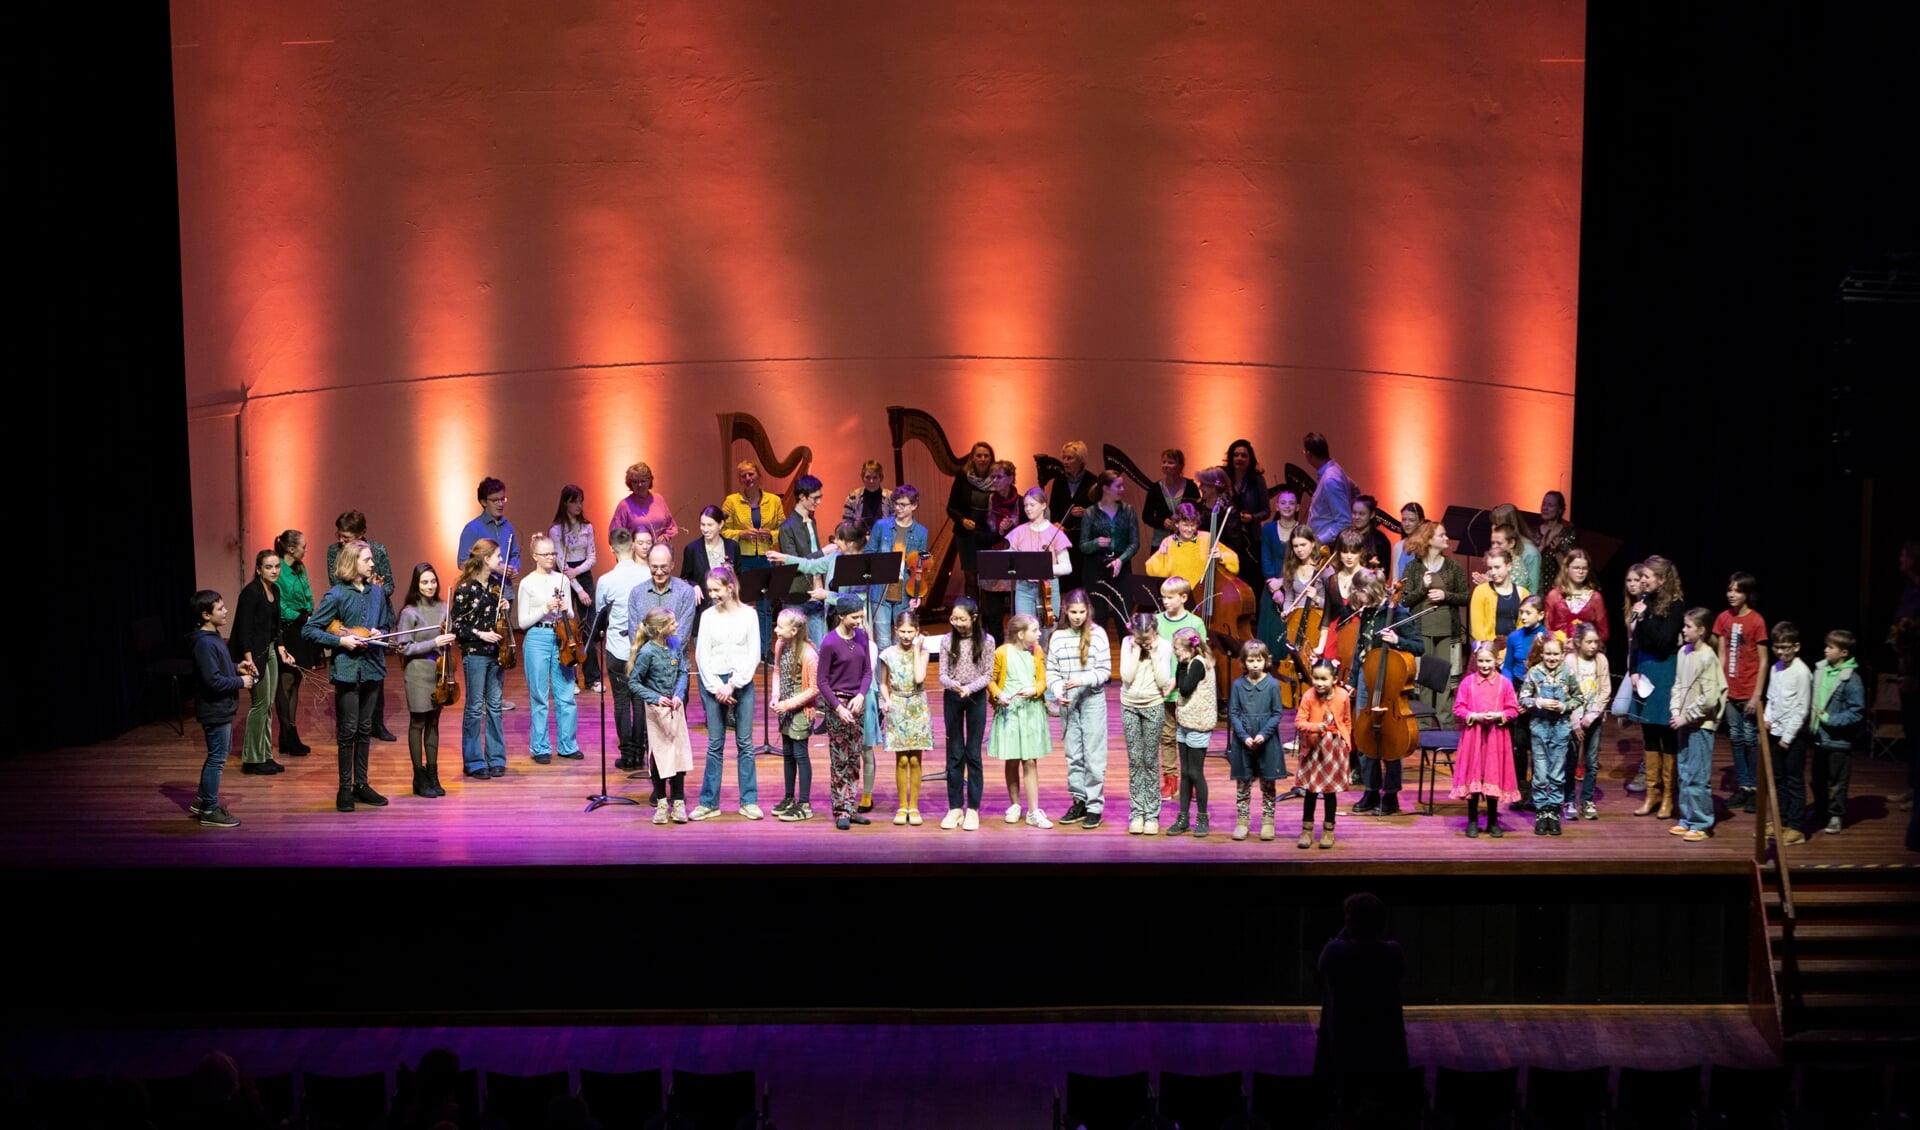 Na afloop stonden alle muzikanten samen op het podium. Foto: Patrick van Gemert/ Zutphens Persbureau